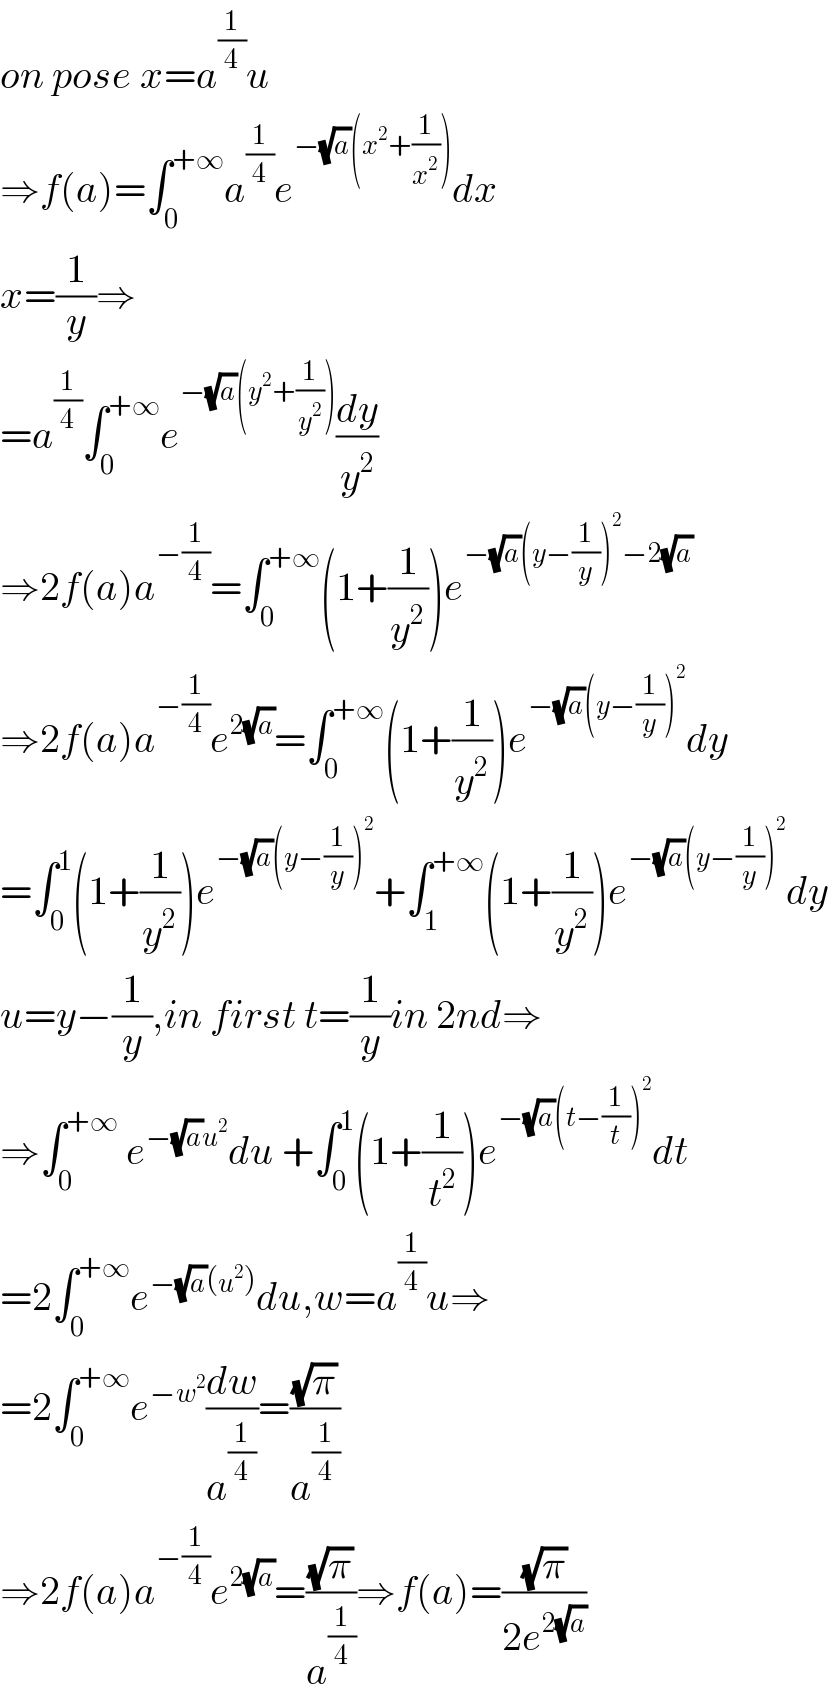 on pose x=a^(1/4) u  ⇒f(a)=∫_0 ^(+∞) a^(1/4) e^(−(√a)(x^2 +(1/x^2 ))) dx  x=(1/y)⇒  =a^(1/4) ∫_0 ^(+∞) e^(−(√a)(y^2 +(1/y^2 ))) (dy/y^2 )  ⇒2f(a)a^(−(1/4)) =∫_0 ^(+∞) (1+(1/y^2 ))e^(−(√a)(y−(1/y))^2 −2(√a))   ⇒2f(a)a^(−(1/4)) e^(2(√a)) =∫_0 ^(+∞) (1+(1/y^2 ))e^(−(√a)(y−(1/y))^2 ) dy  =∫_0 ^1 (1+(1/y^2 ))e^(−(√a)(y−(1/y))^2 ) +∫_1 ^(+∞) (1+(1/y^2 ))e^(−(√a)(y−(1/y))^2 ) dy  u=y−(1/y),in first t=(1/y)in 2nd⇒  ⇒∫_0 ^(+∞)  e^(−(√a)u^2 ) du +∫_0 ^1 (1+(1/t^2 ))e^(−(√a)(t−(1/t))^2 ) dt  =2∫_0 ^(+∞) e^(−(√a)(u^2 )) du,w=a^(1/4) u⇒  =2∫_0 ^(+∞) e^(−w^2 ) (dw/a^(1/4) )=((√π)/a^(1/4) )  ⇒2f(a)a^(−(1/4)) e^(2(√a)) =((√π)/a^(1/4) )⇒f(a)=((√π)/(2e^(2(√a)) ))  